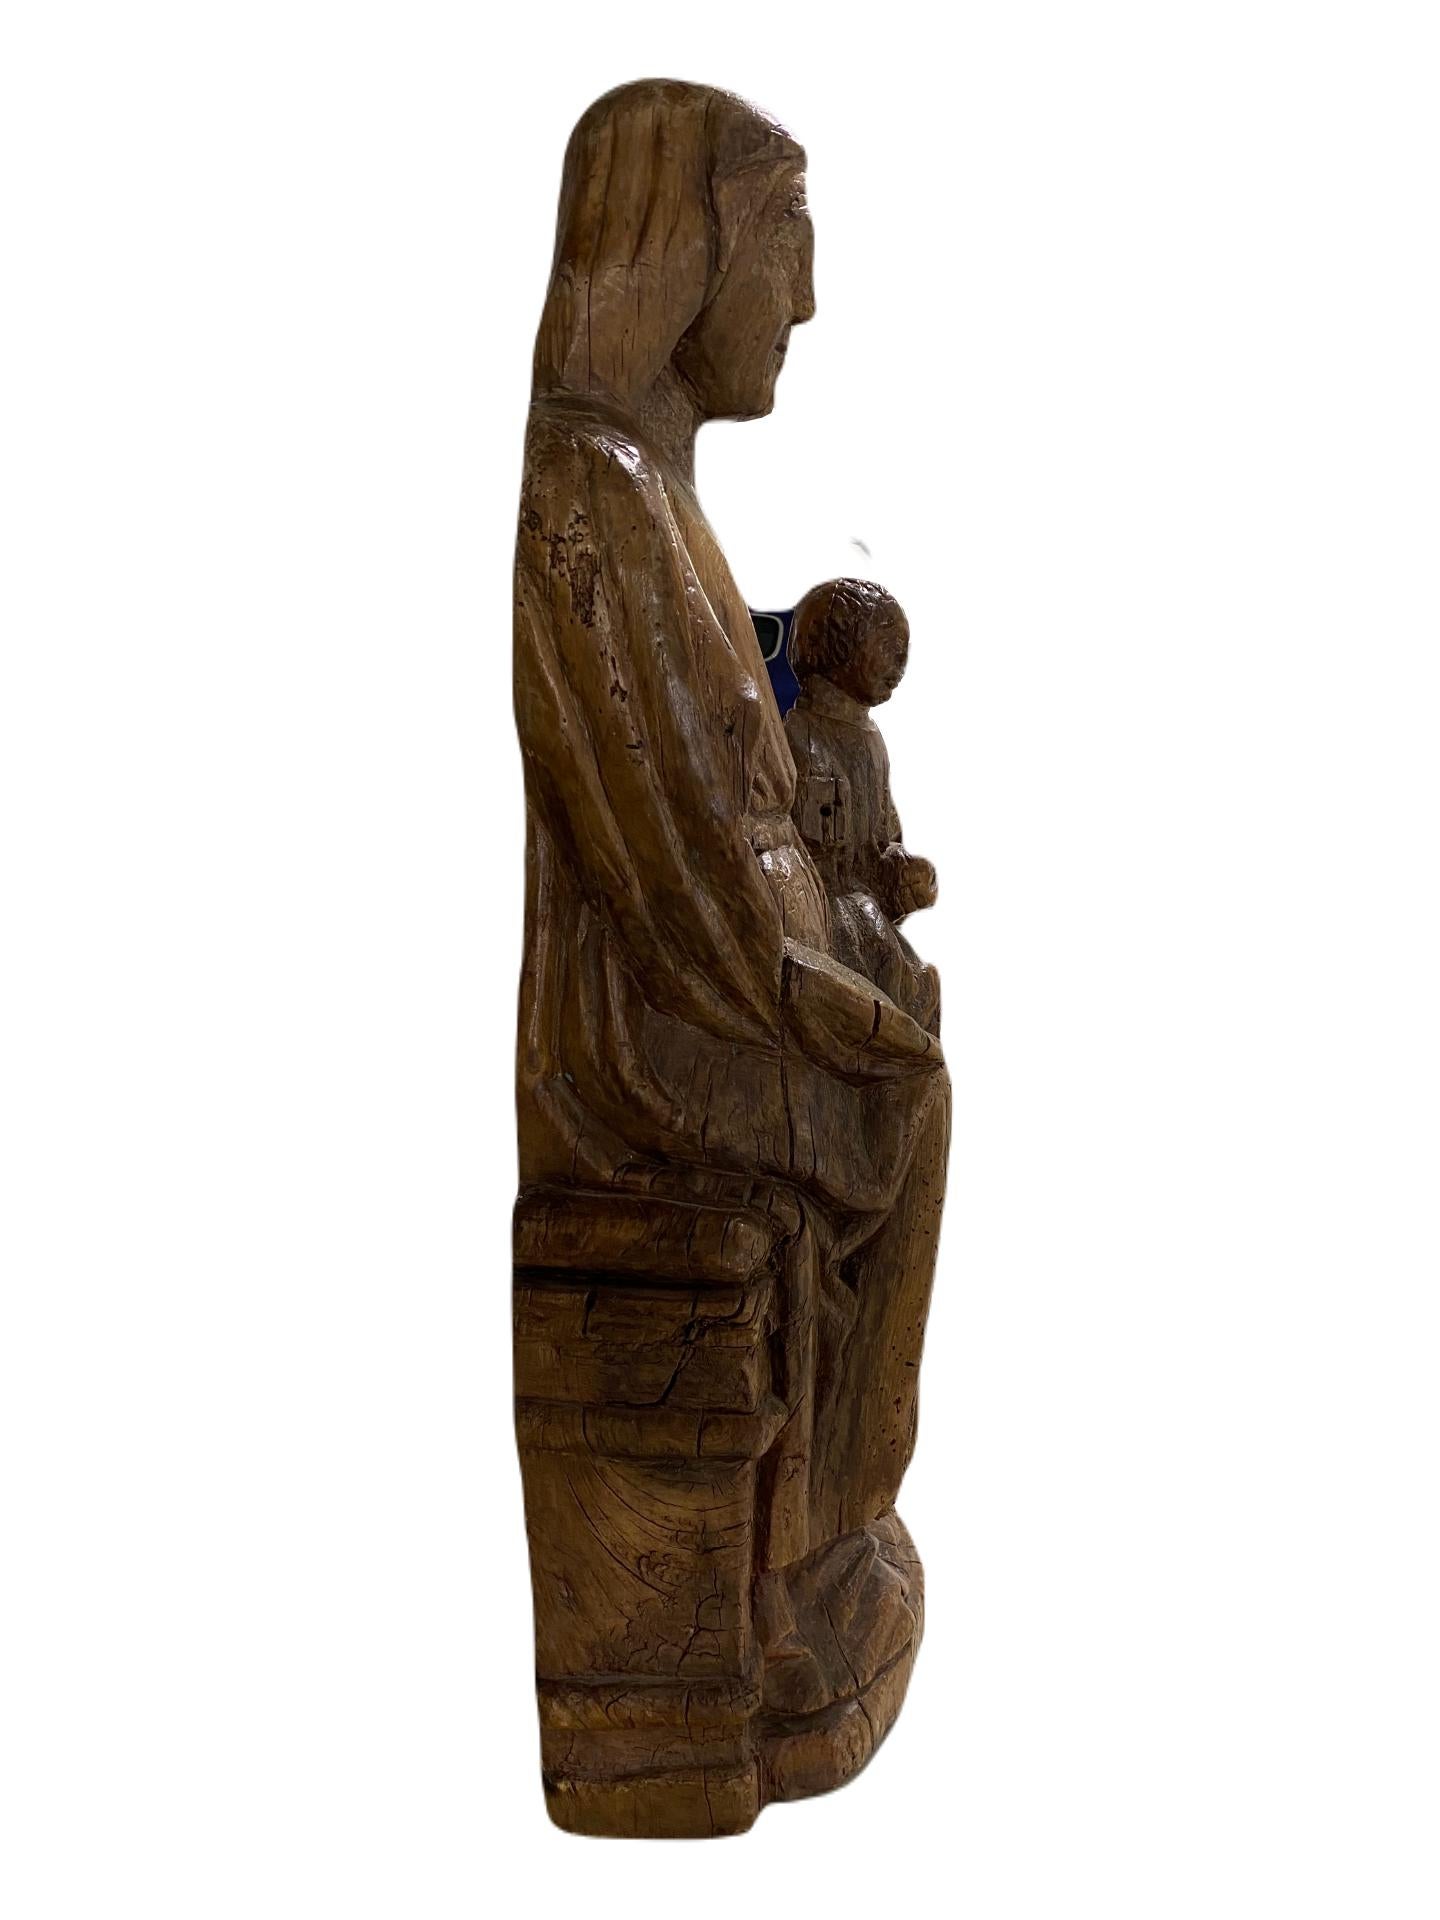 Inthronisierte Madonna mit Kind.  – Sculpture von Unknown